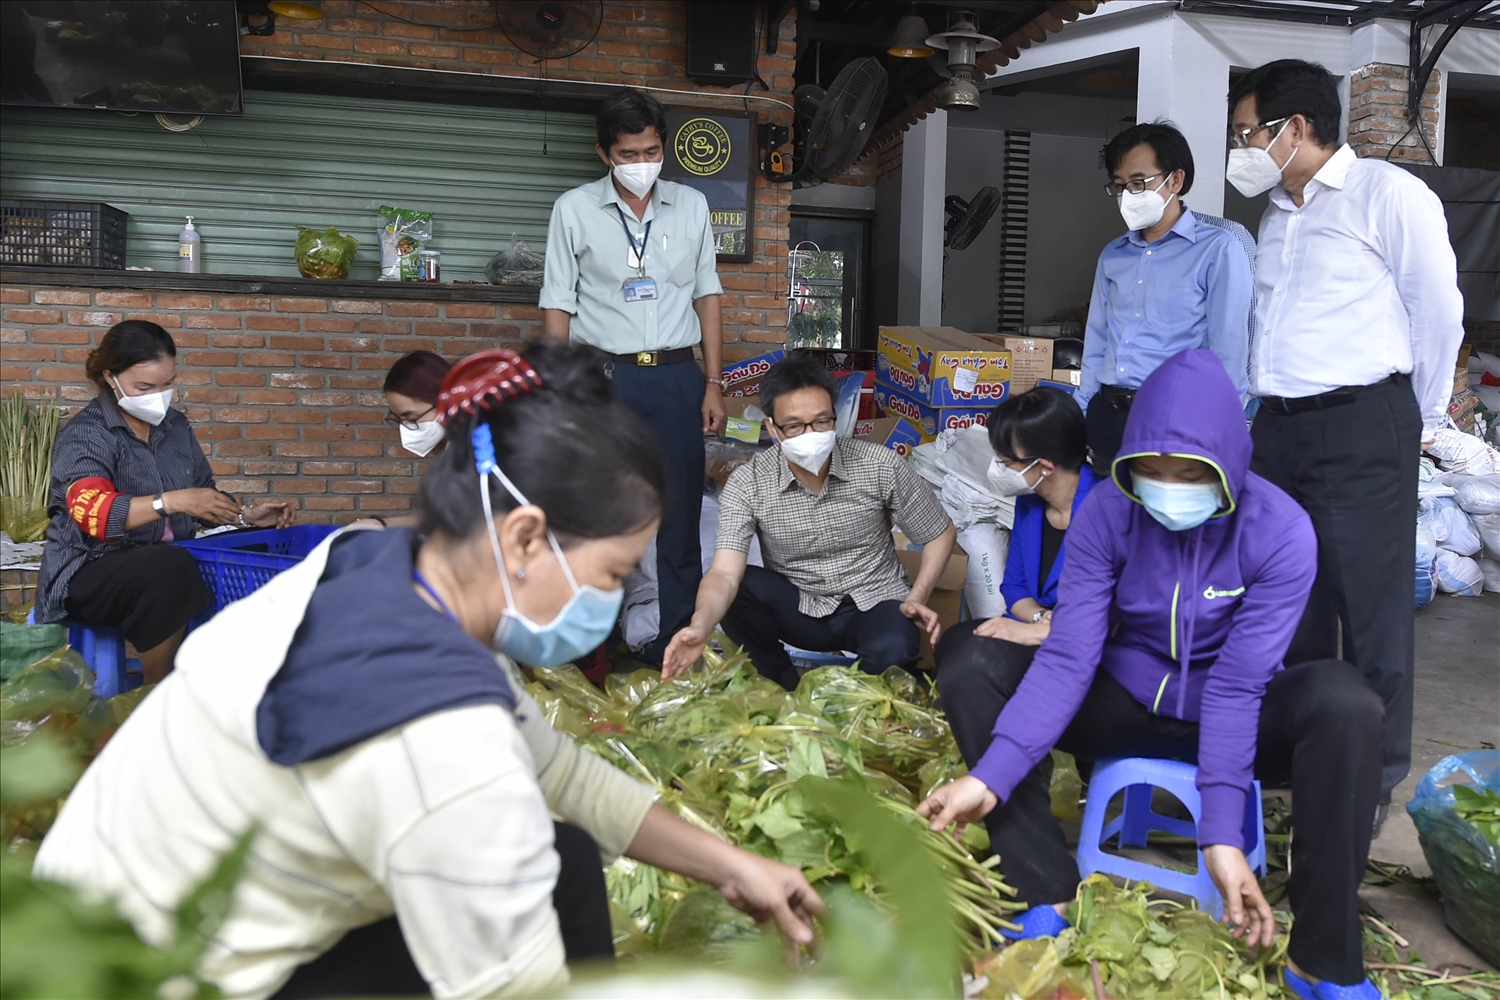 Tại Trung tâm an sinh phường Sơn Kỳ (quận Tân Phú), Phó Thủ tướng trao đổi với lãnh đạo quận Tân Phú về việc cung cấp rau xanh, thực phẩm tươi cho người dân. Ảnh VGP/Đình Nam